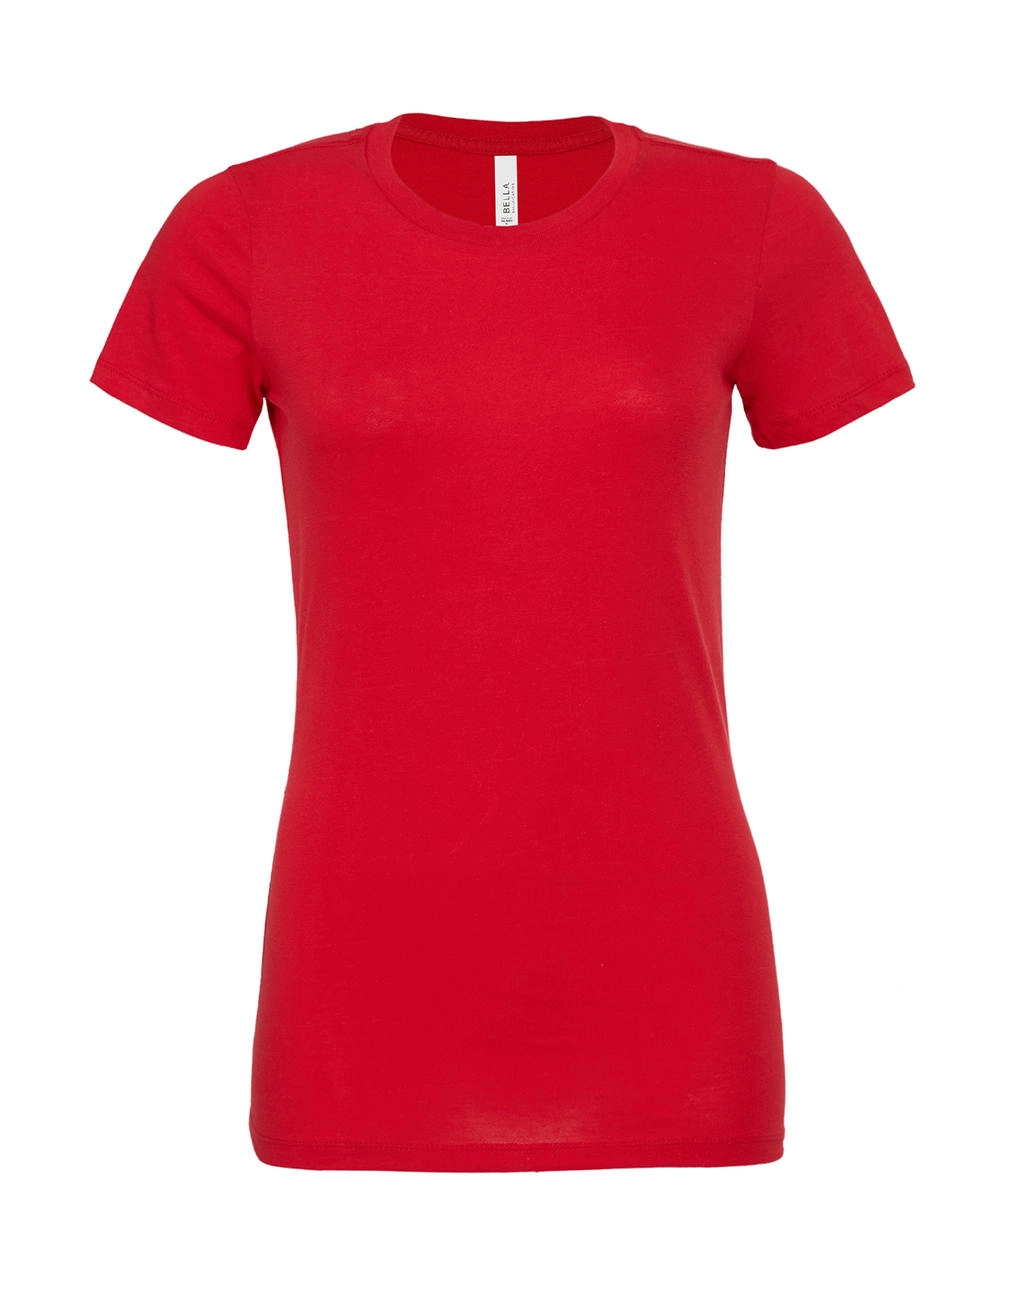 Women`s Relaxed Jersey Short Sleeve Tee zum Besticken und Bedrucken in der Farbe Red mit Ihren Logo, Schriftzug oder Motiv.